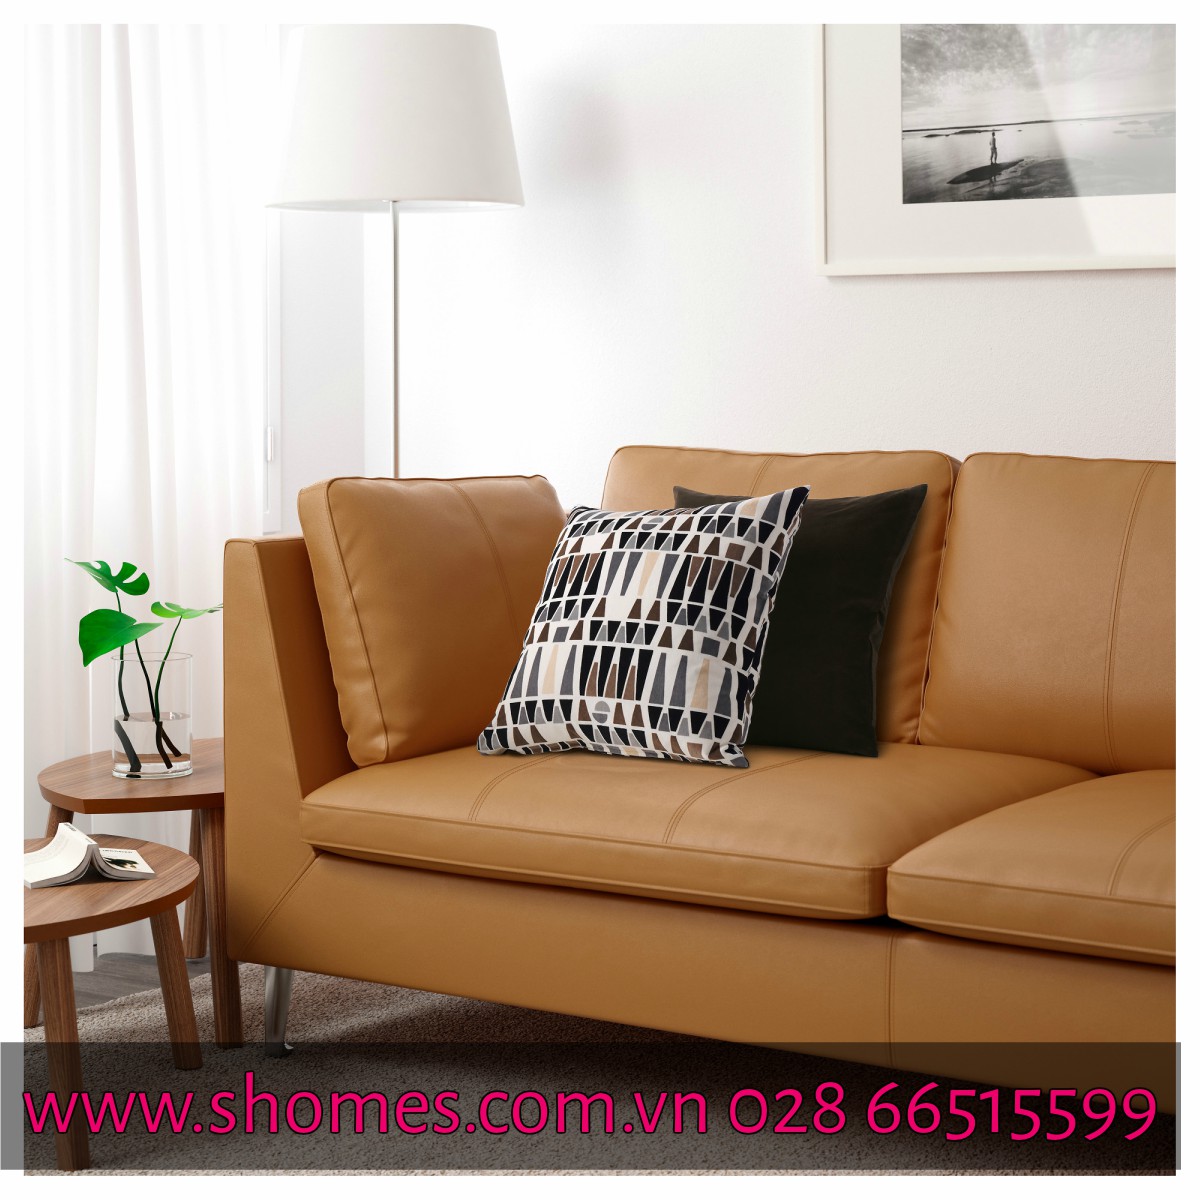 ghế sofa, ghế sofa hiện đại, ghế sofa góc, ghế sofa chất lượng, ghế sofa góc nhiều tông màu cho phòng khách, ghế sofa chất lượng, ghế sofa cao cấp, ghế sofa êm, sofa đẹp cho phòng khách, sofa hiện đại nhất hiện nay